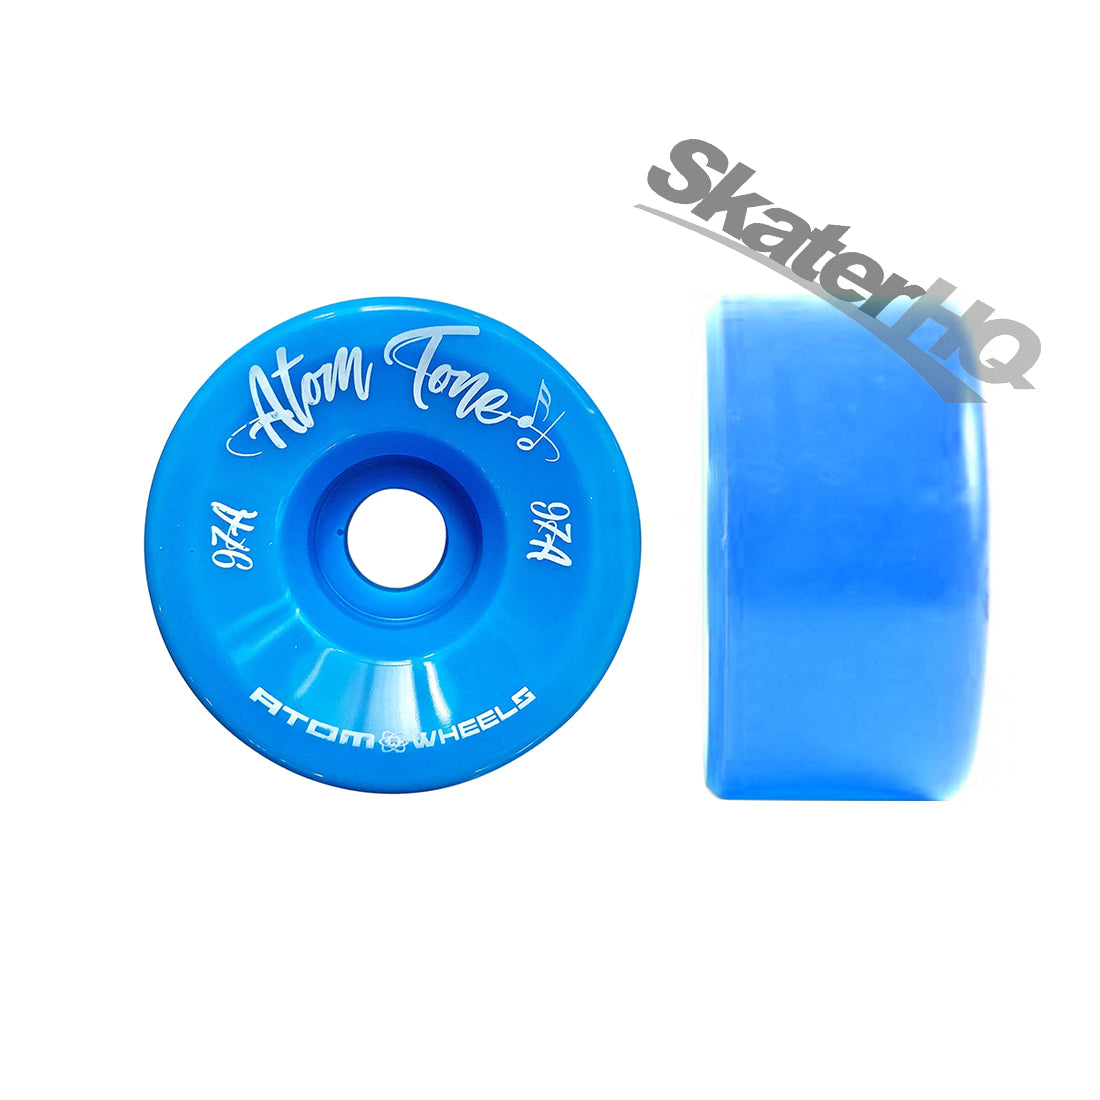 Atom Tone 57x32mm/97a 4pk - Blue Roller Skate Wheels